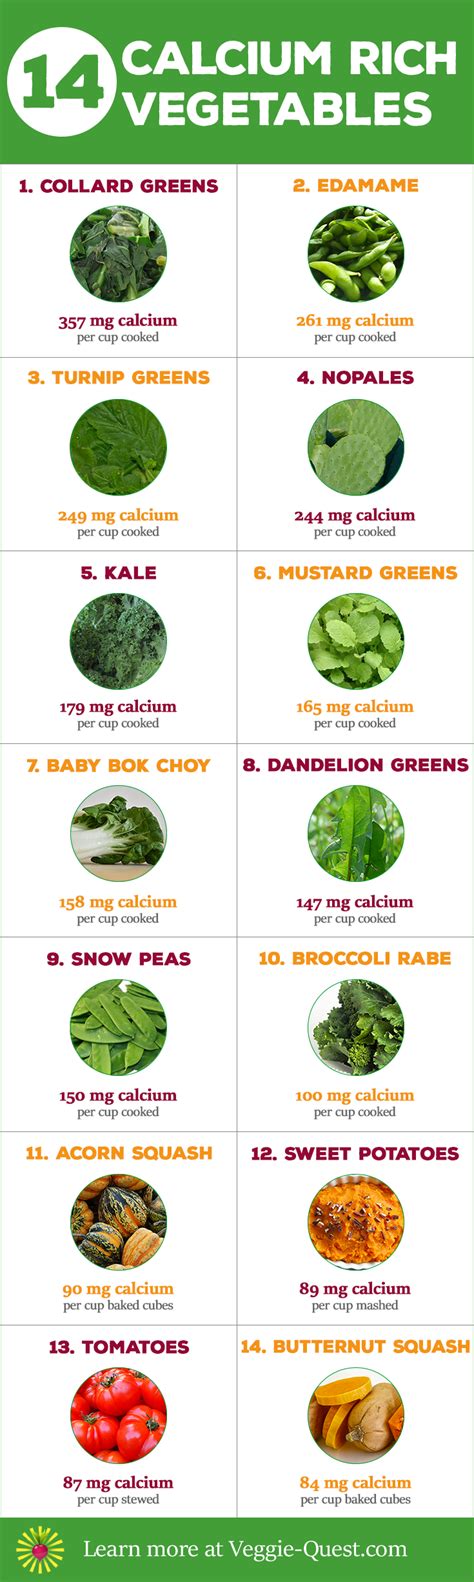 14 Calcium Rich Vegetables